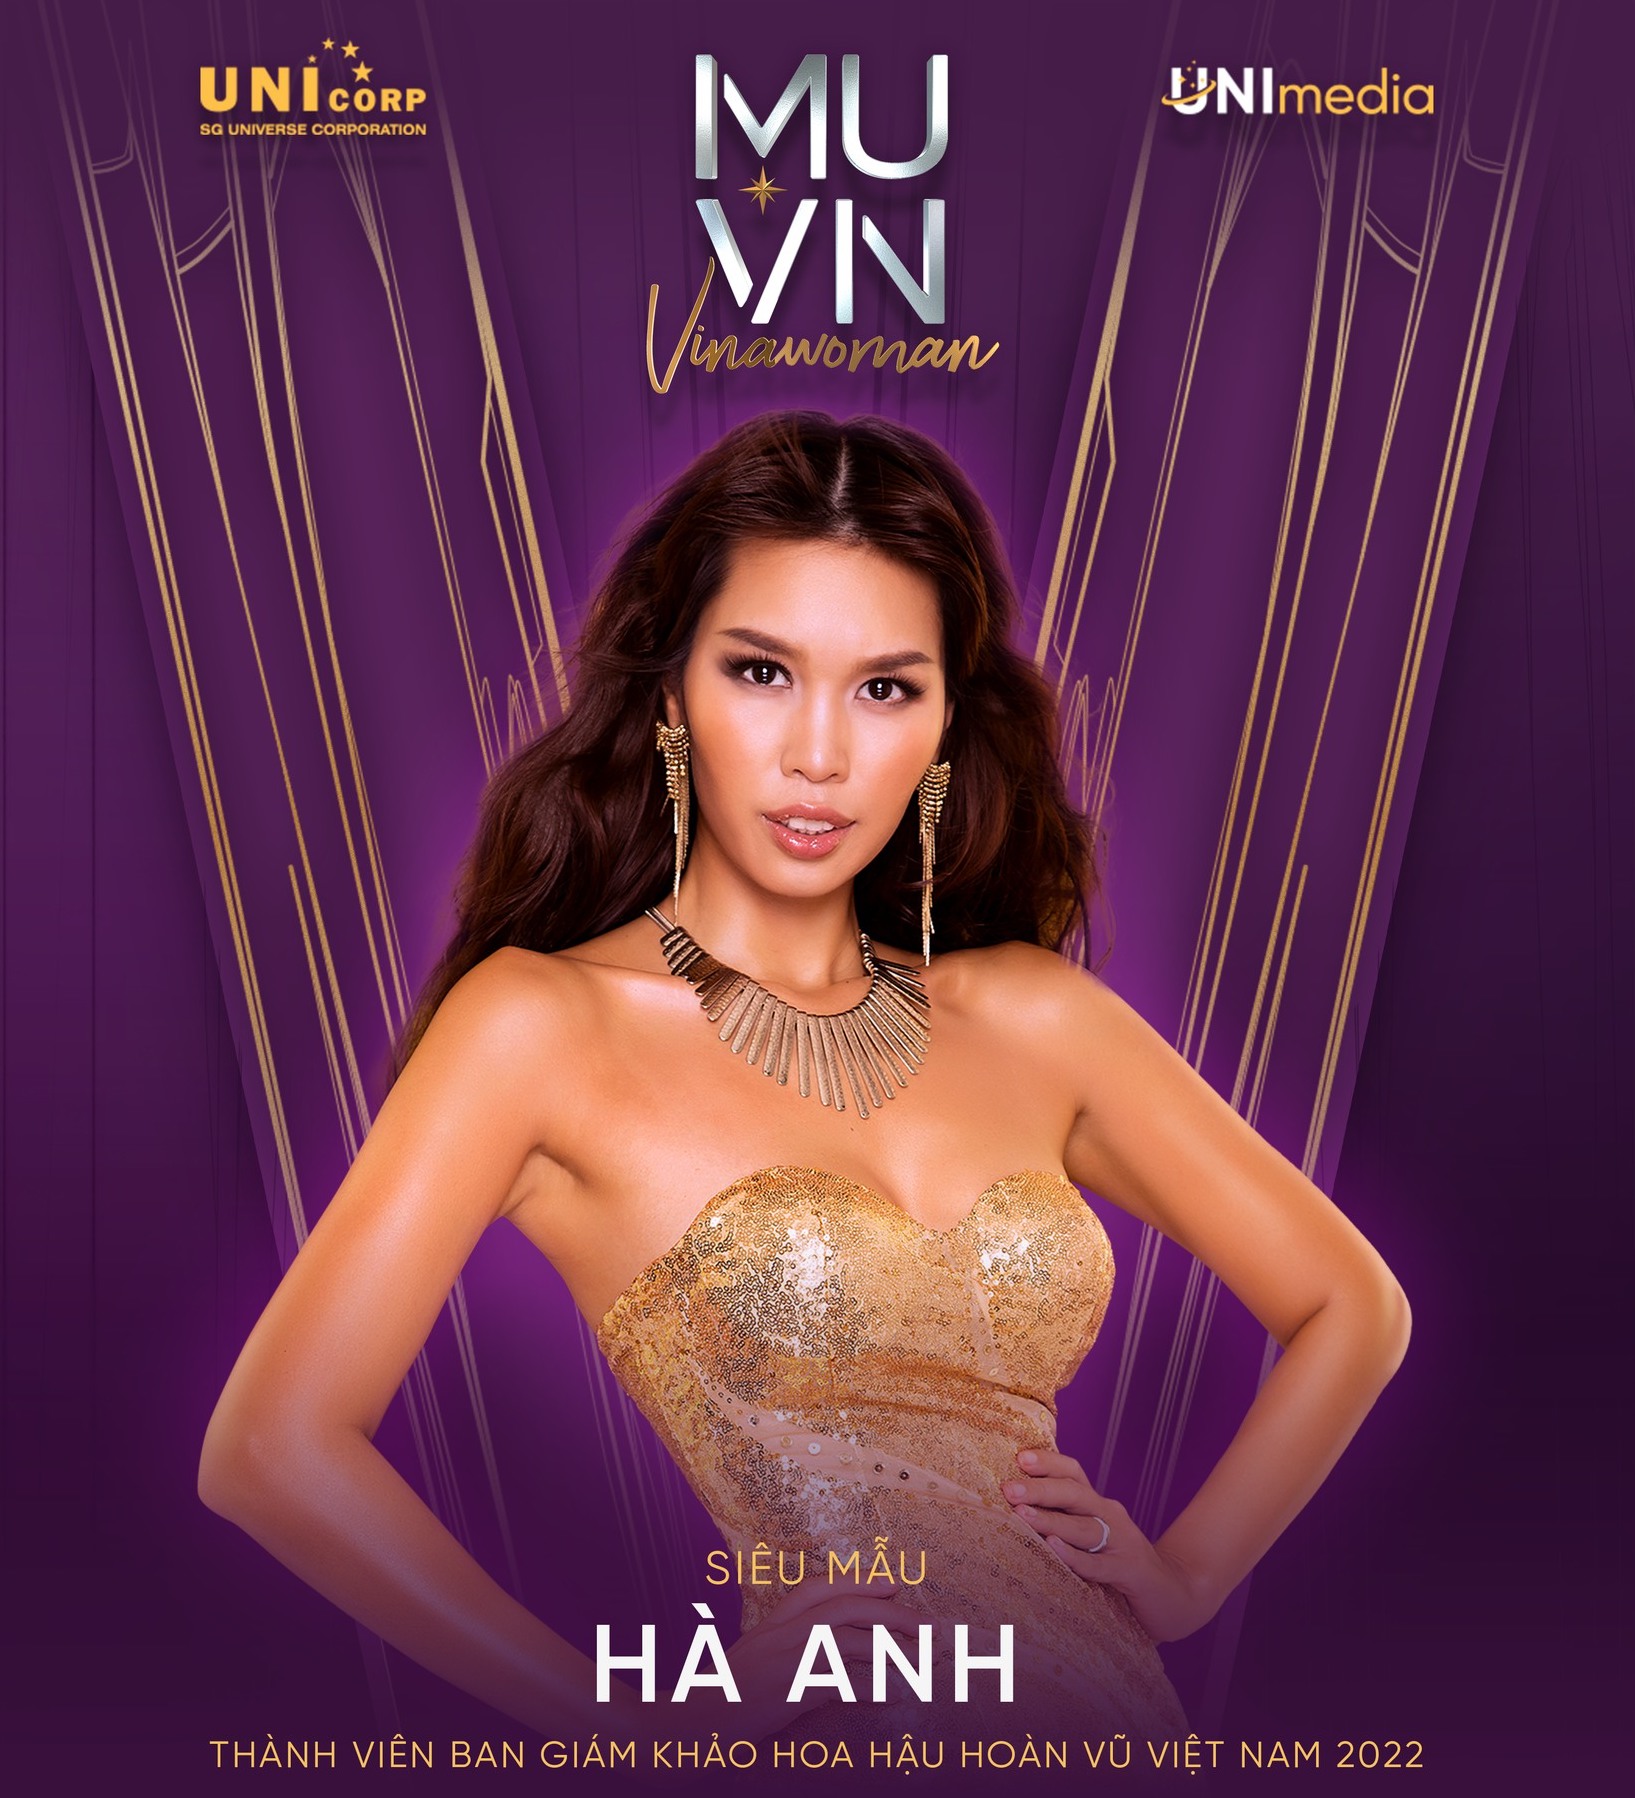 Bài công bố Hà Anh làm giám khảo Miss Universe Vietnam bỗng bay màu, chuyện gì đây? - Ảnh 4.